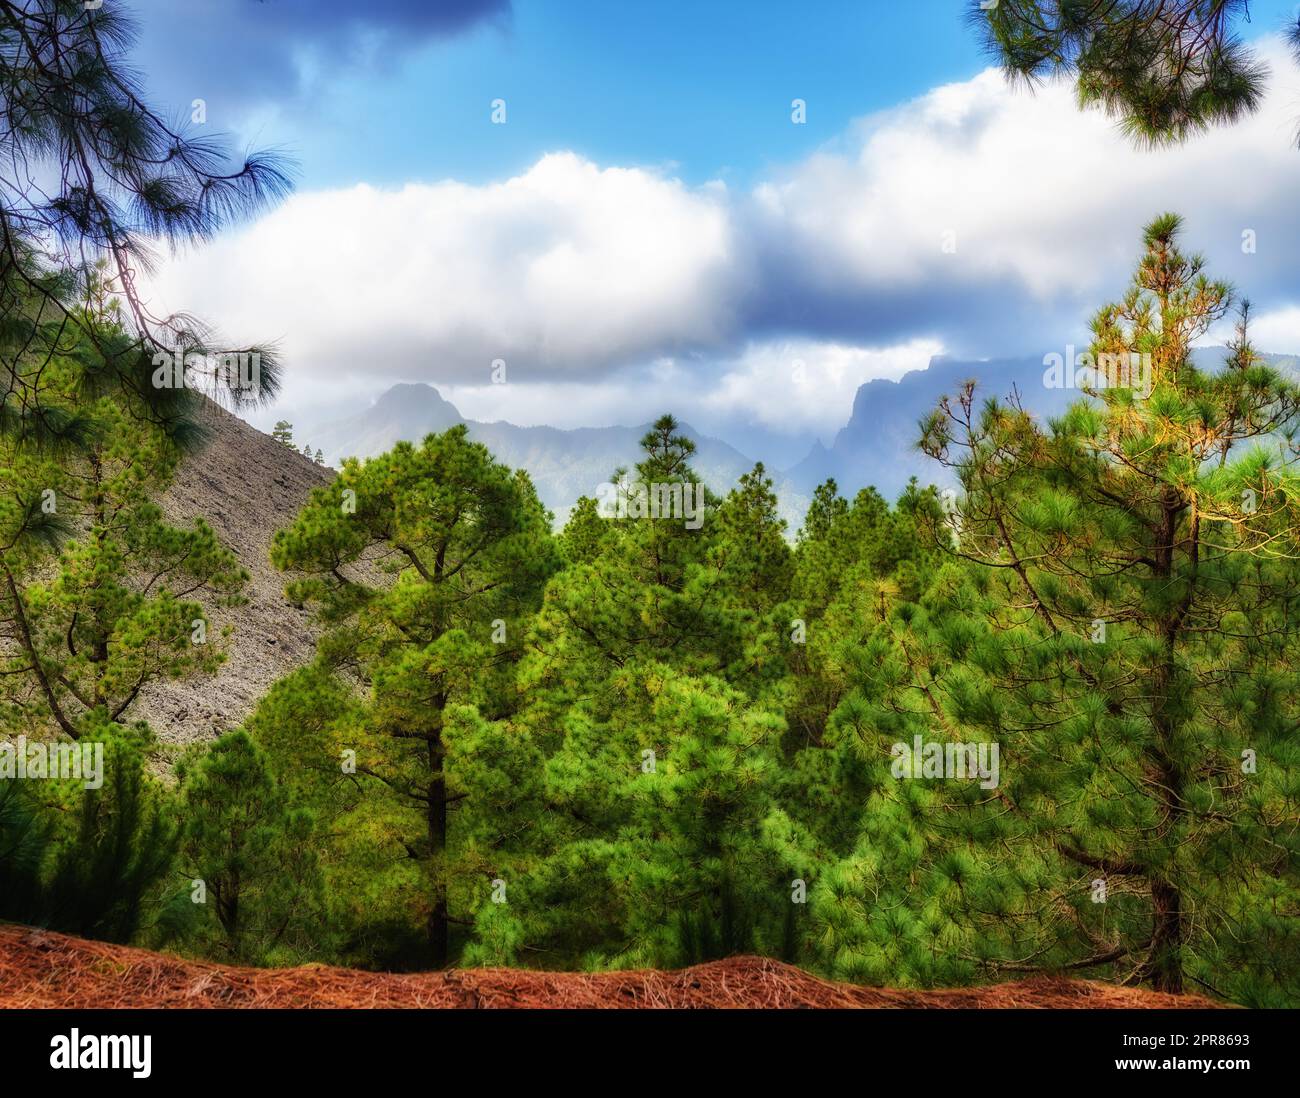 Foresta di pini con cielo nuvoloso blu in autunno. Paesaggio di una collina che domina un ambiente verde. Scoperta e esplorazione selvaggia nella natura nelle montagne di la Palma, Isole Canarie, Spagna Foto Stock